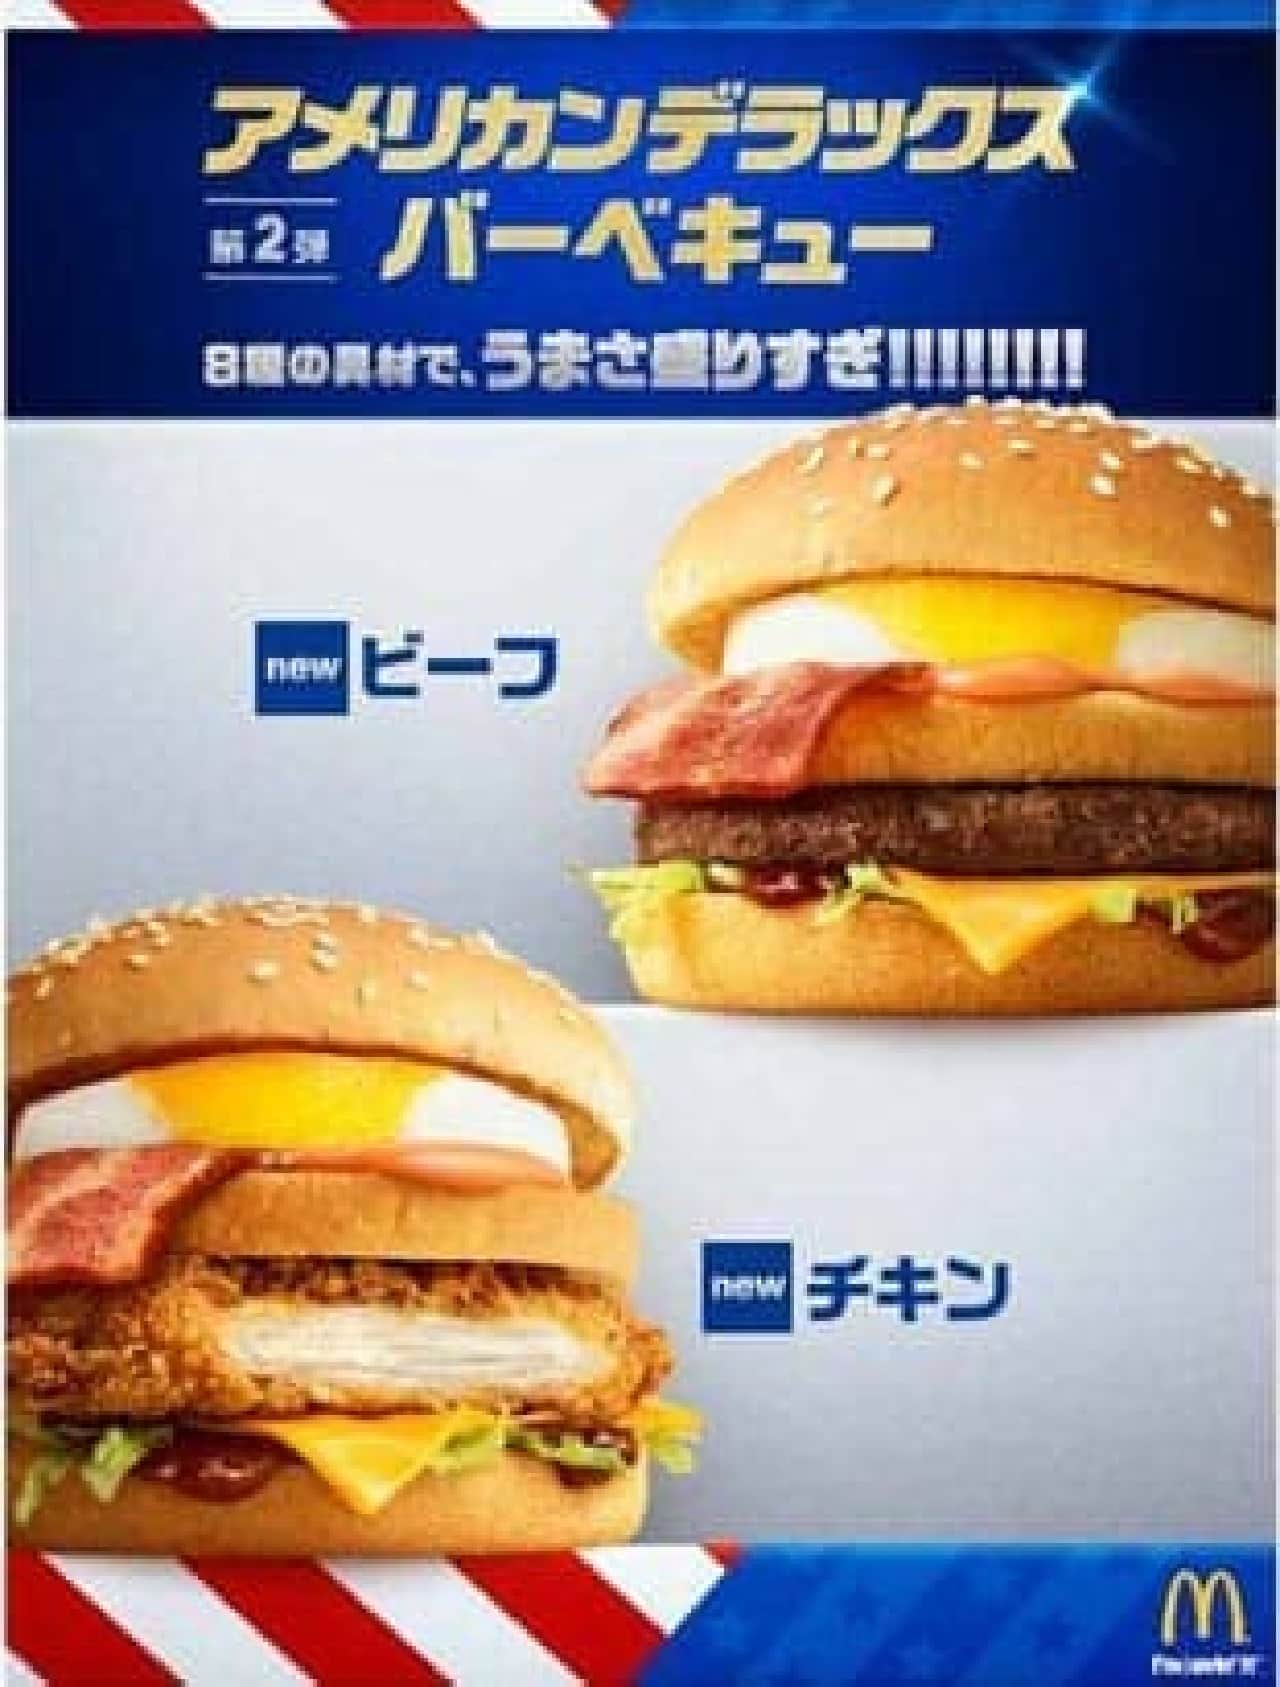 McDonald's "Deluxe BBQ Beef" "Deluxe BBQ Chicken"